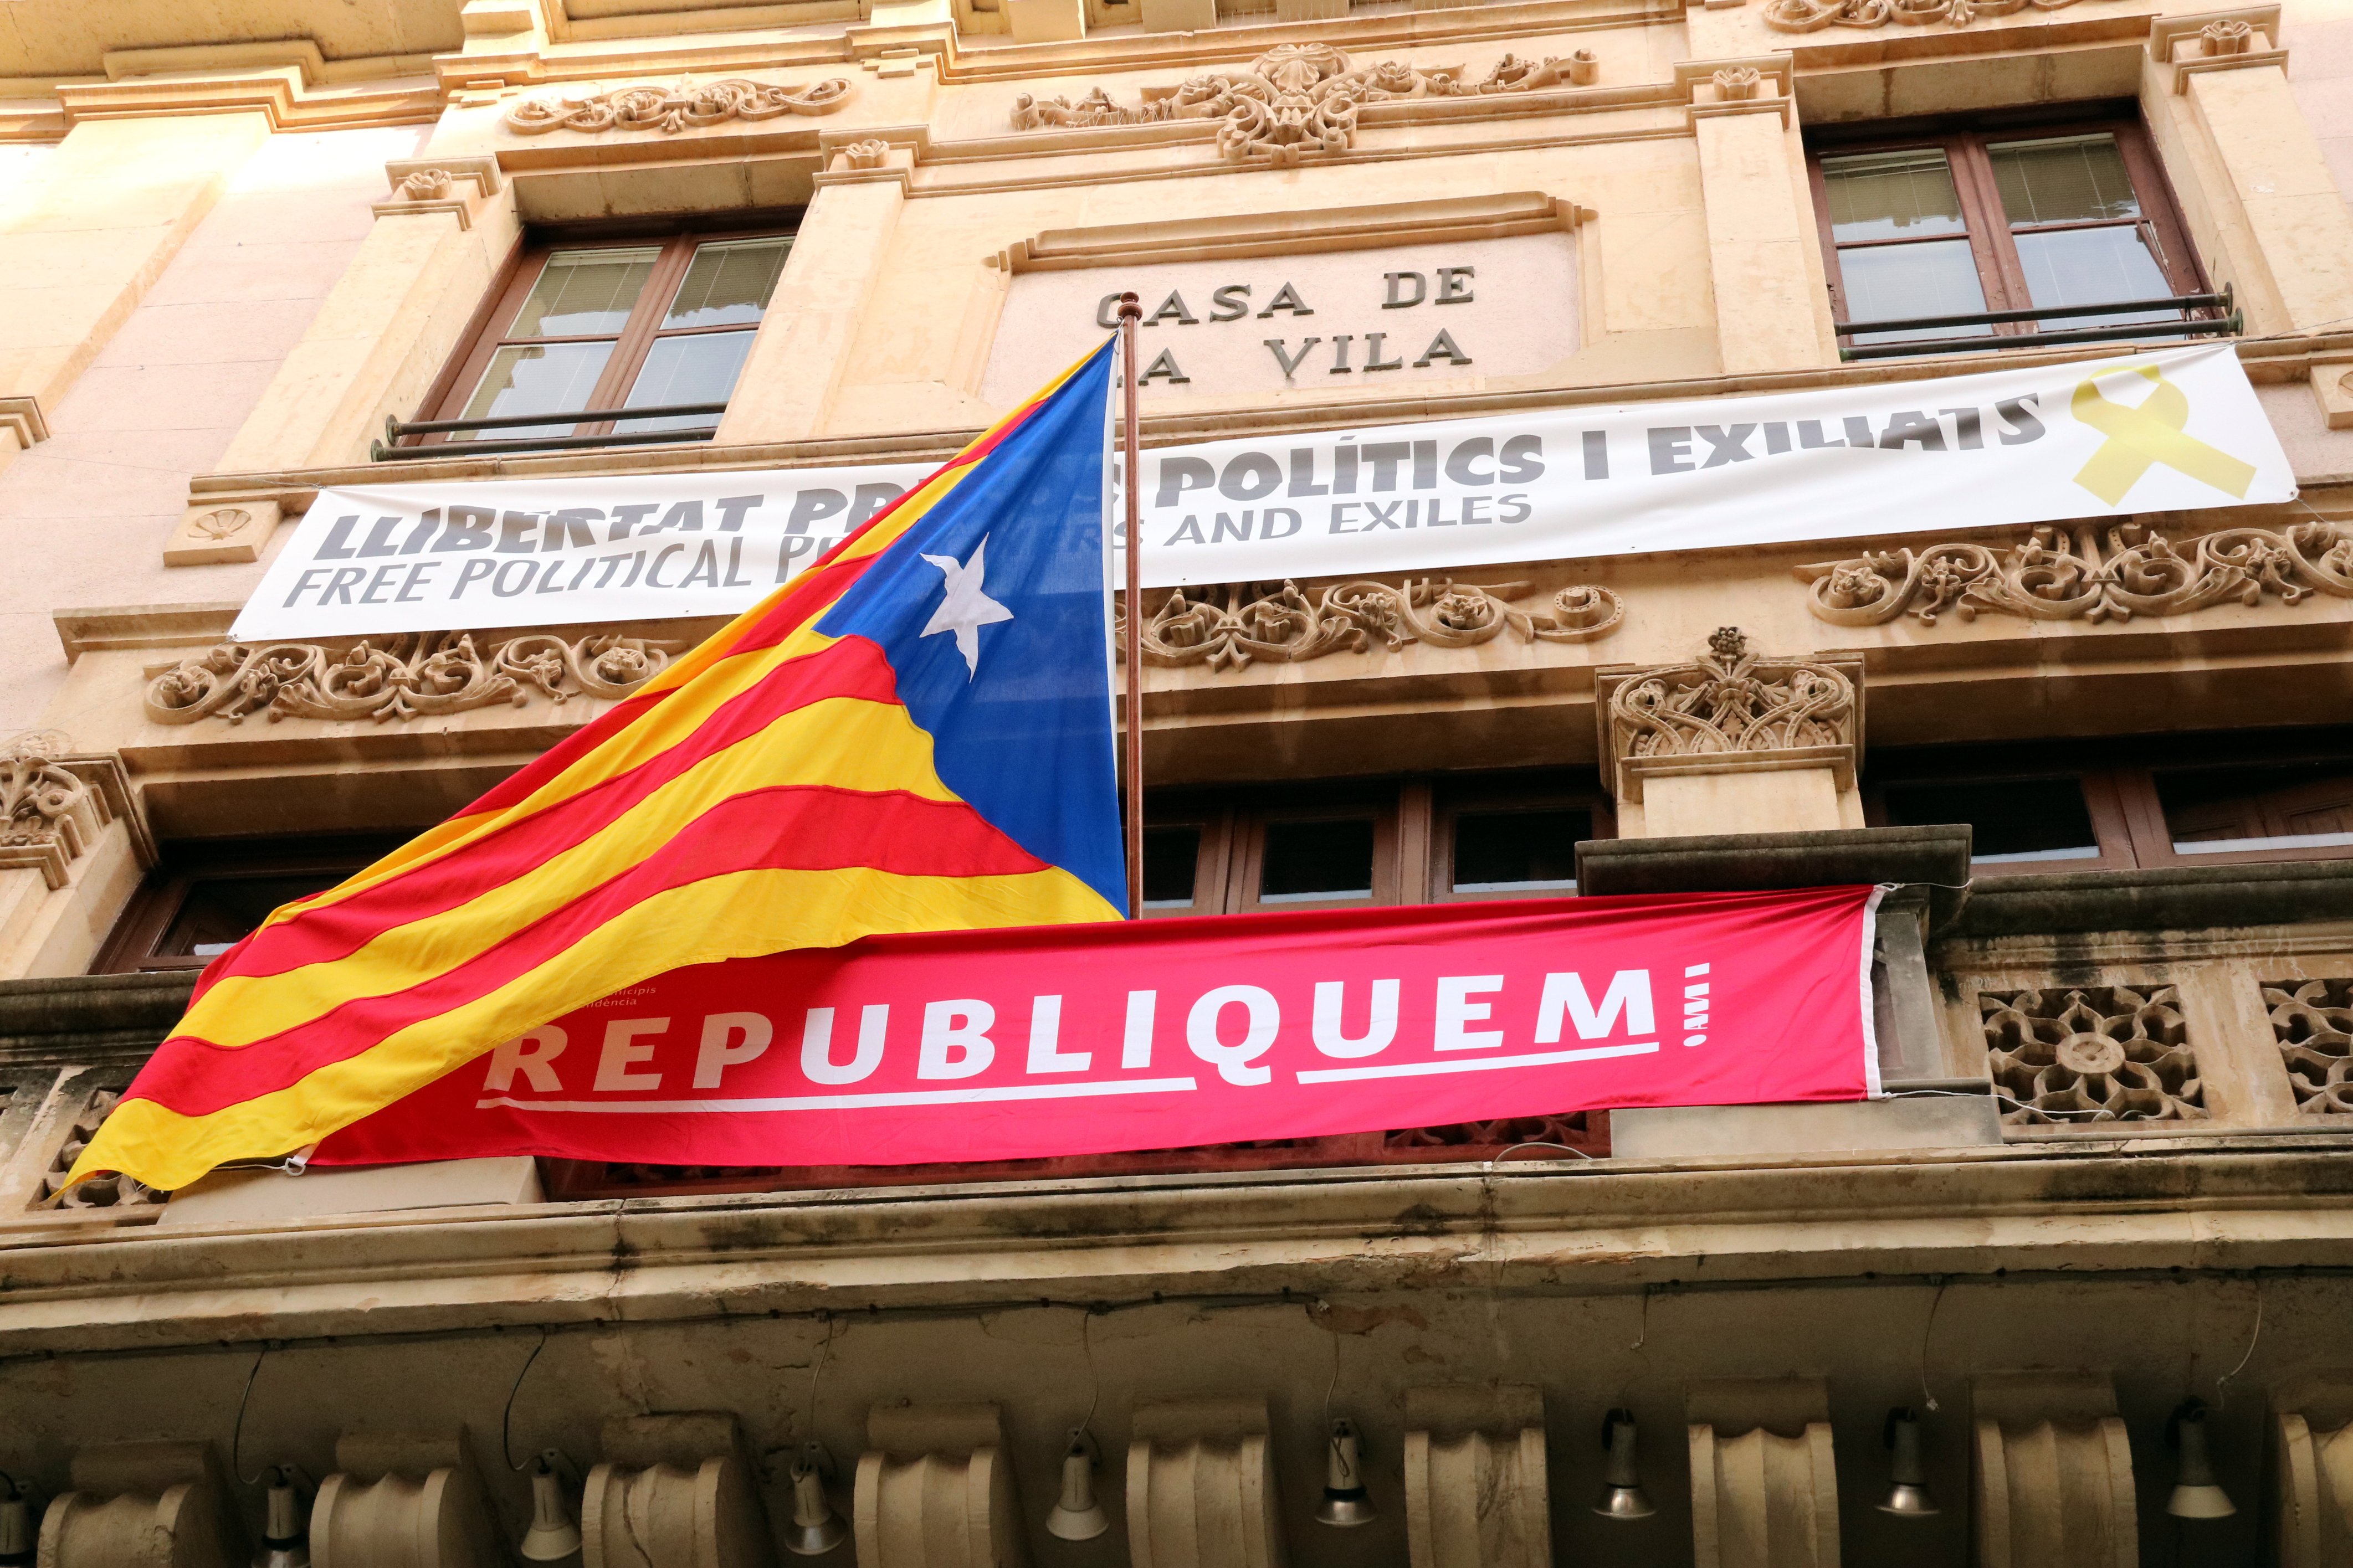 La Junta Electoral ordena a Valls i Amposta retirar llaços i pancartes